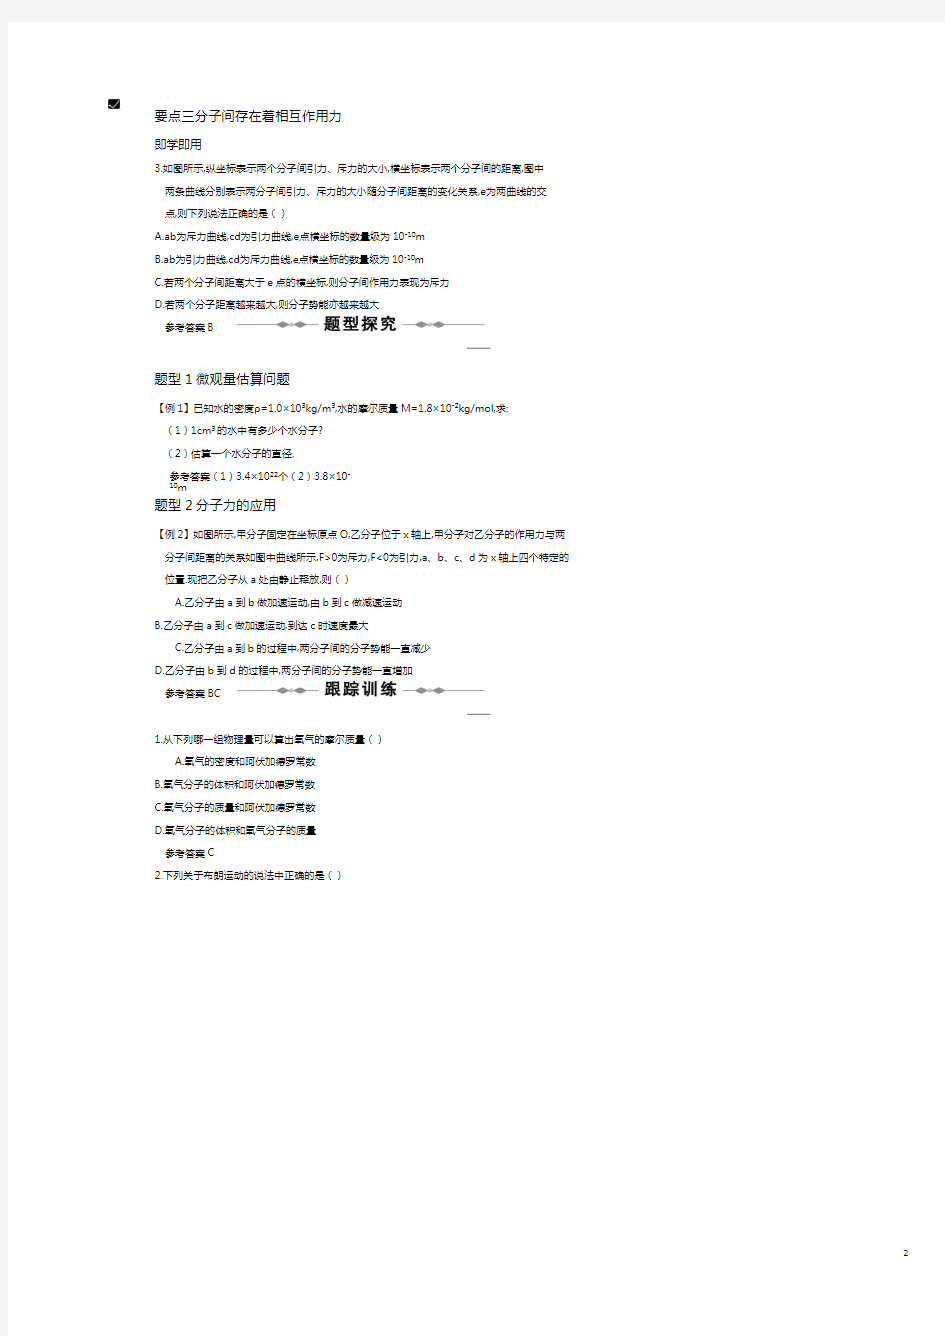 高三物理复习精品讲义之热学.pdf